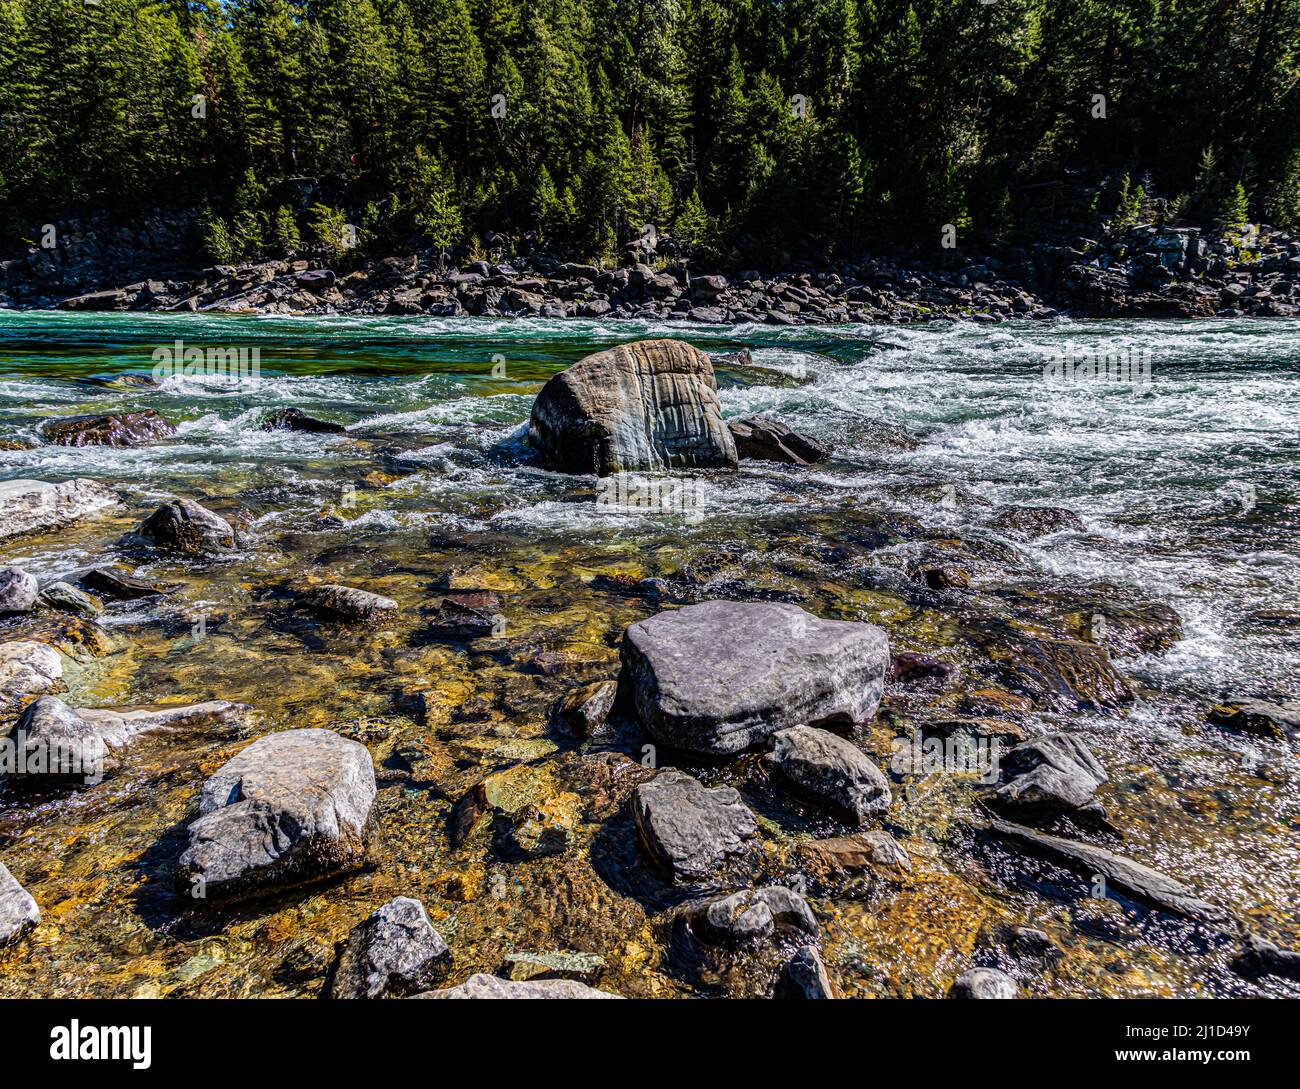 Rapids and Boulders on The Kootenai River, Lincoln County, Montana, USA Stock Photo